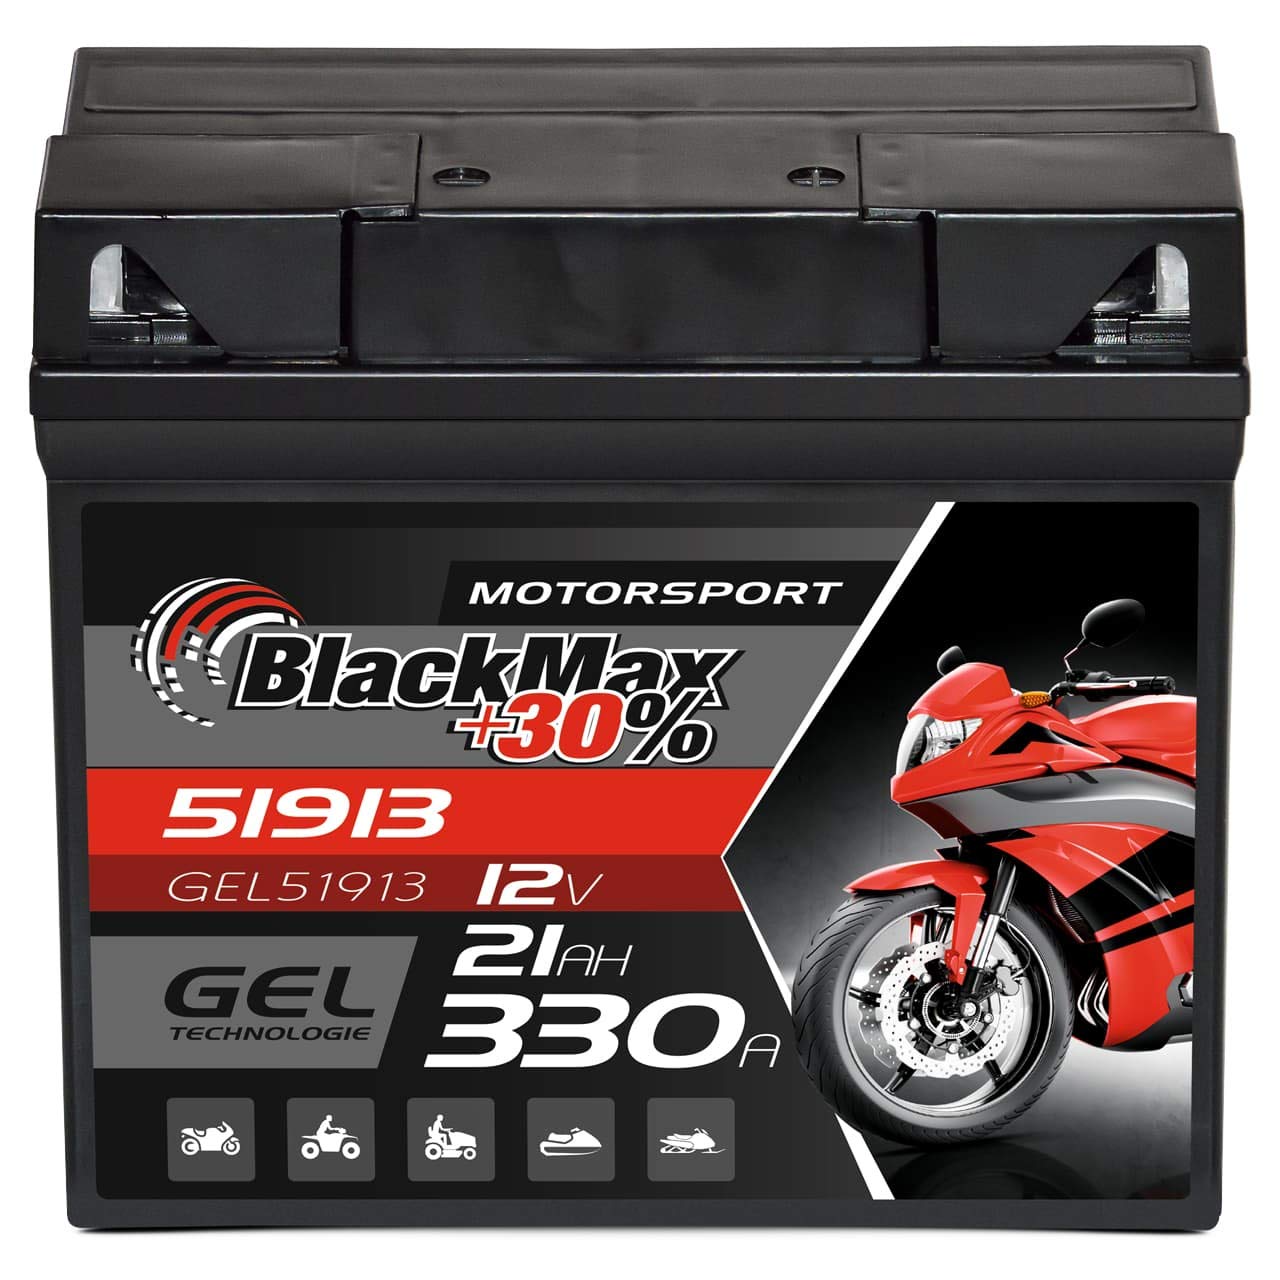 BlackMax G19 51913 Motorradbatterie GEL 12V 21Ah Batterie 519013017 ABS 19Ah